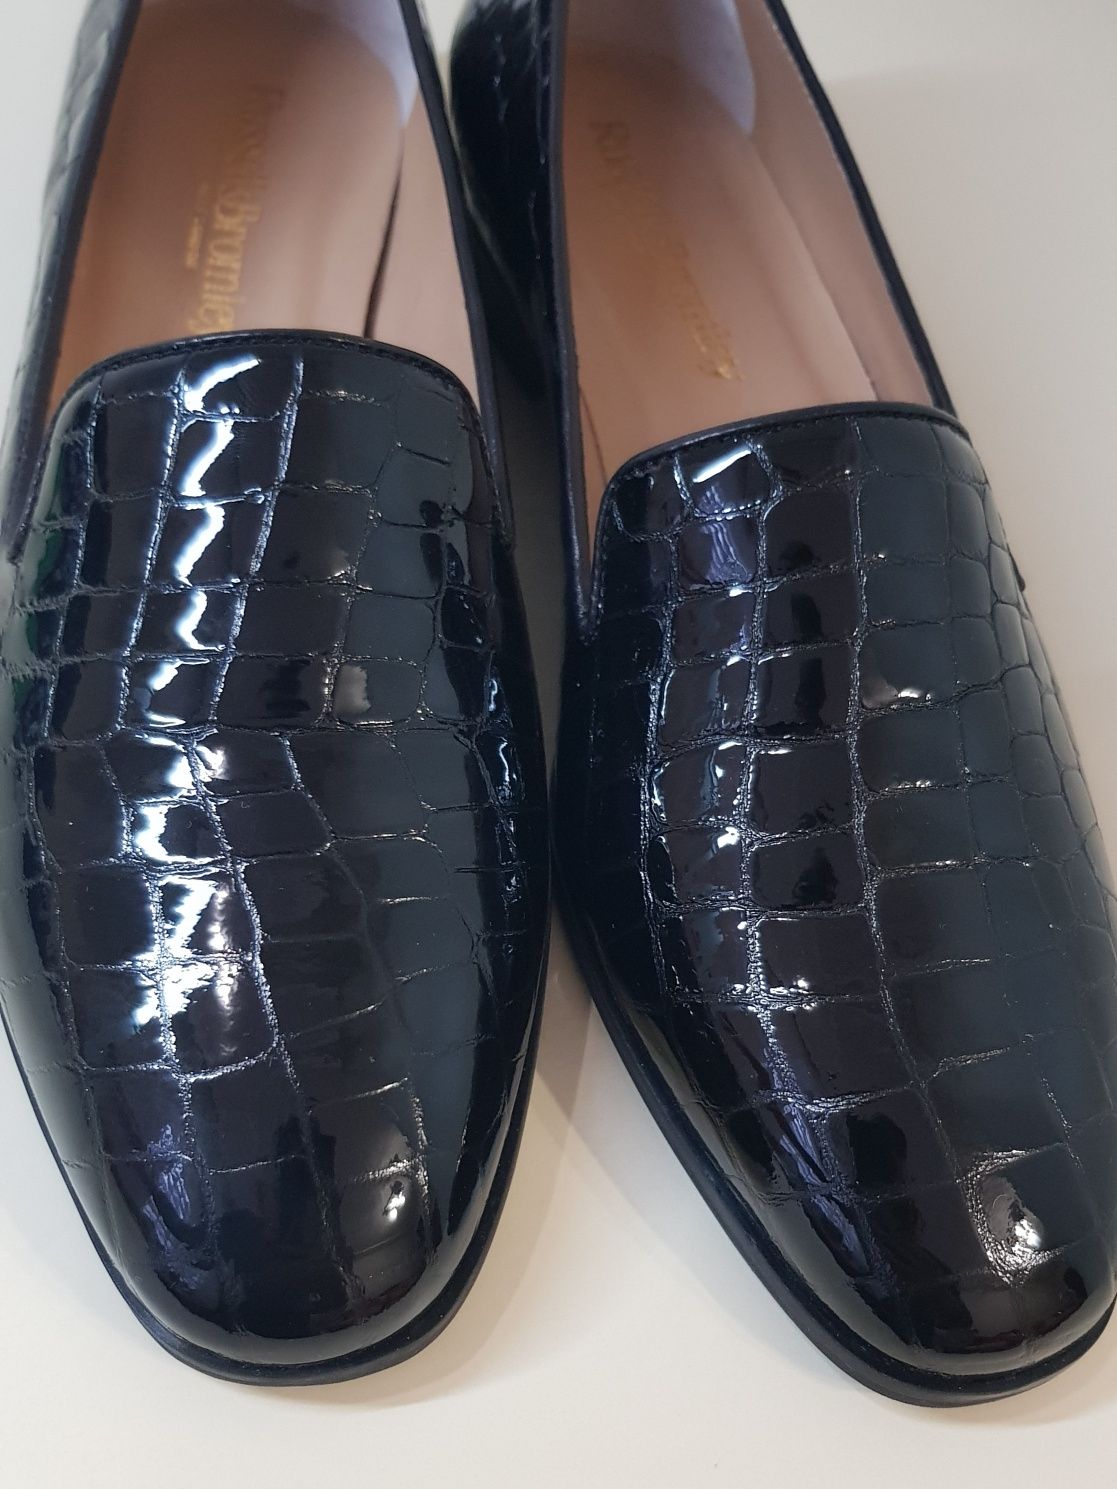 Лоферы Russell&Bromley Italy оригинал 40 размер слипоны мокасины туфли